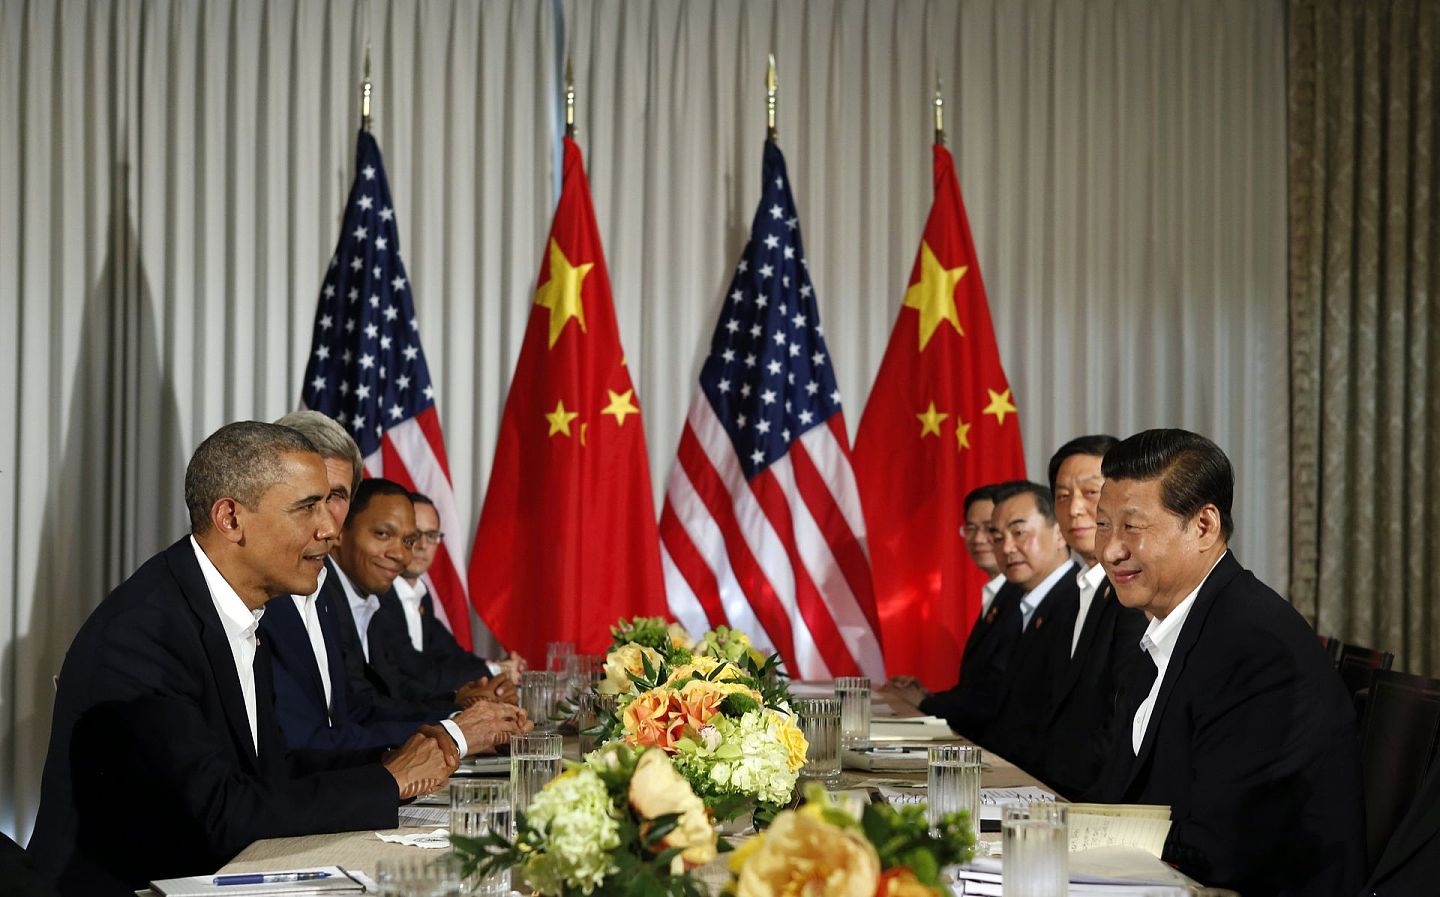 2013年6月7日，中国国家主席习近平与时任美国总统奥巴马在加州举行双边会晤。当时主管美大地区事务和翻译工作的部长助理郑泽光（右边从外至里最后一位）陪同习近平及王毅等中国领导人出席。（Reuters）